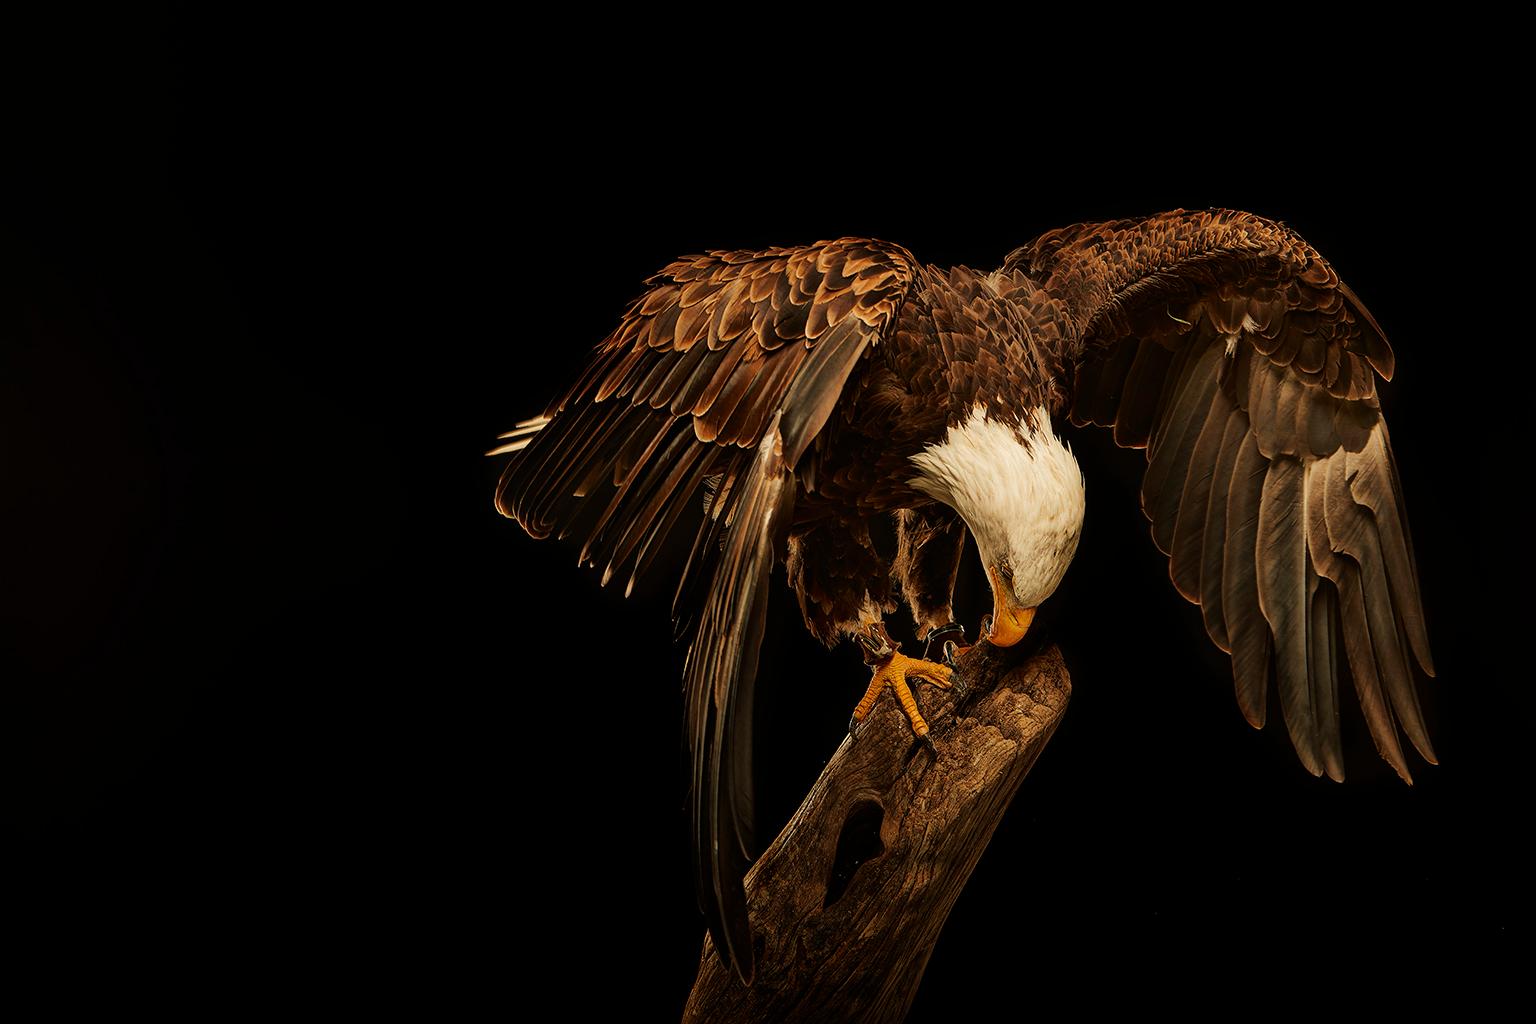 Chris Gordaneer Color Photograph - Birds of Prey Bald Eagle No. 18